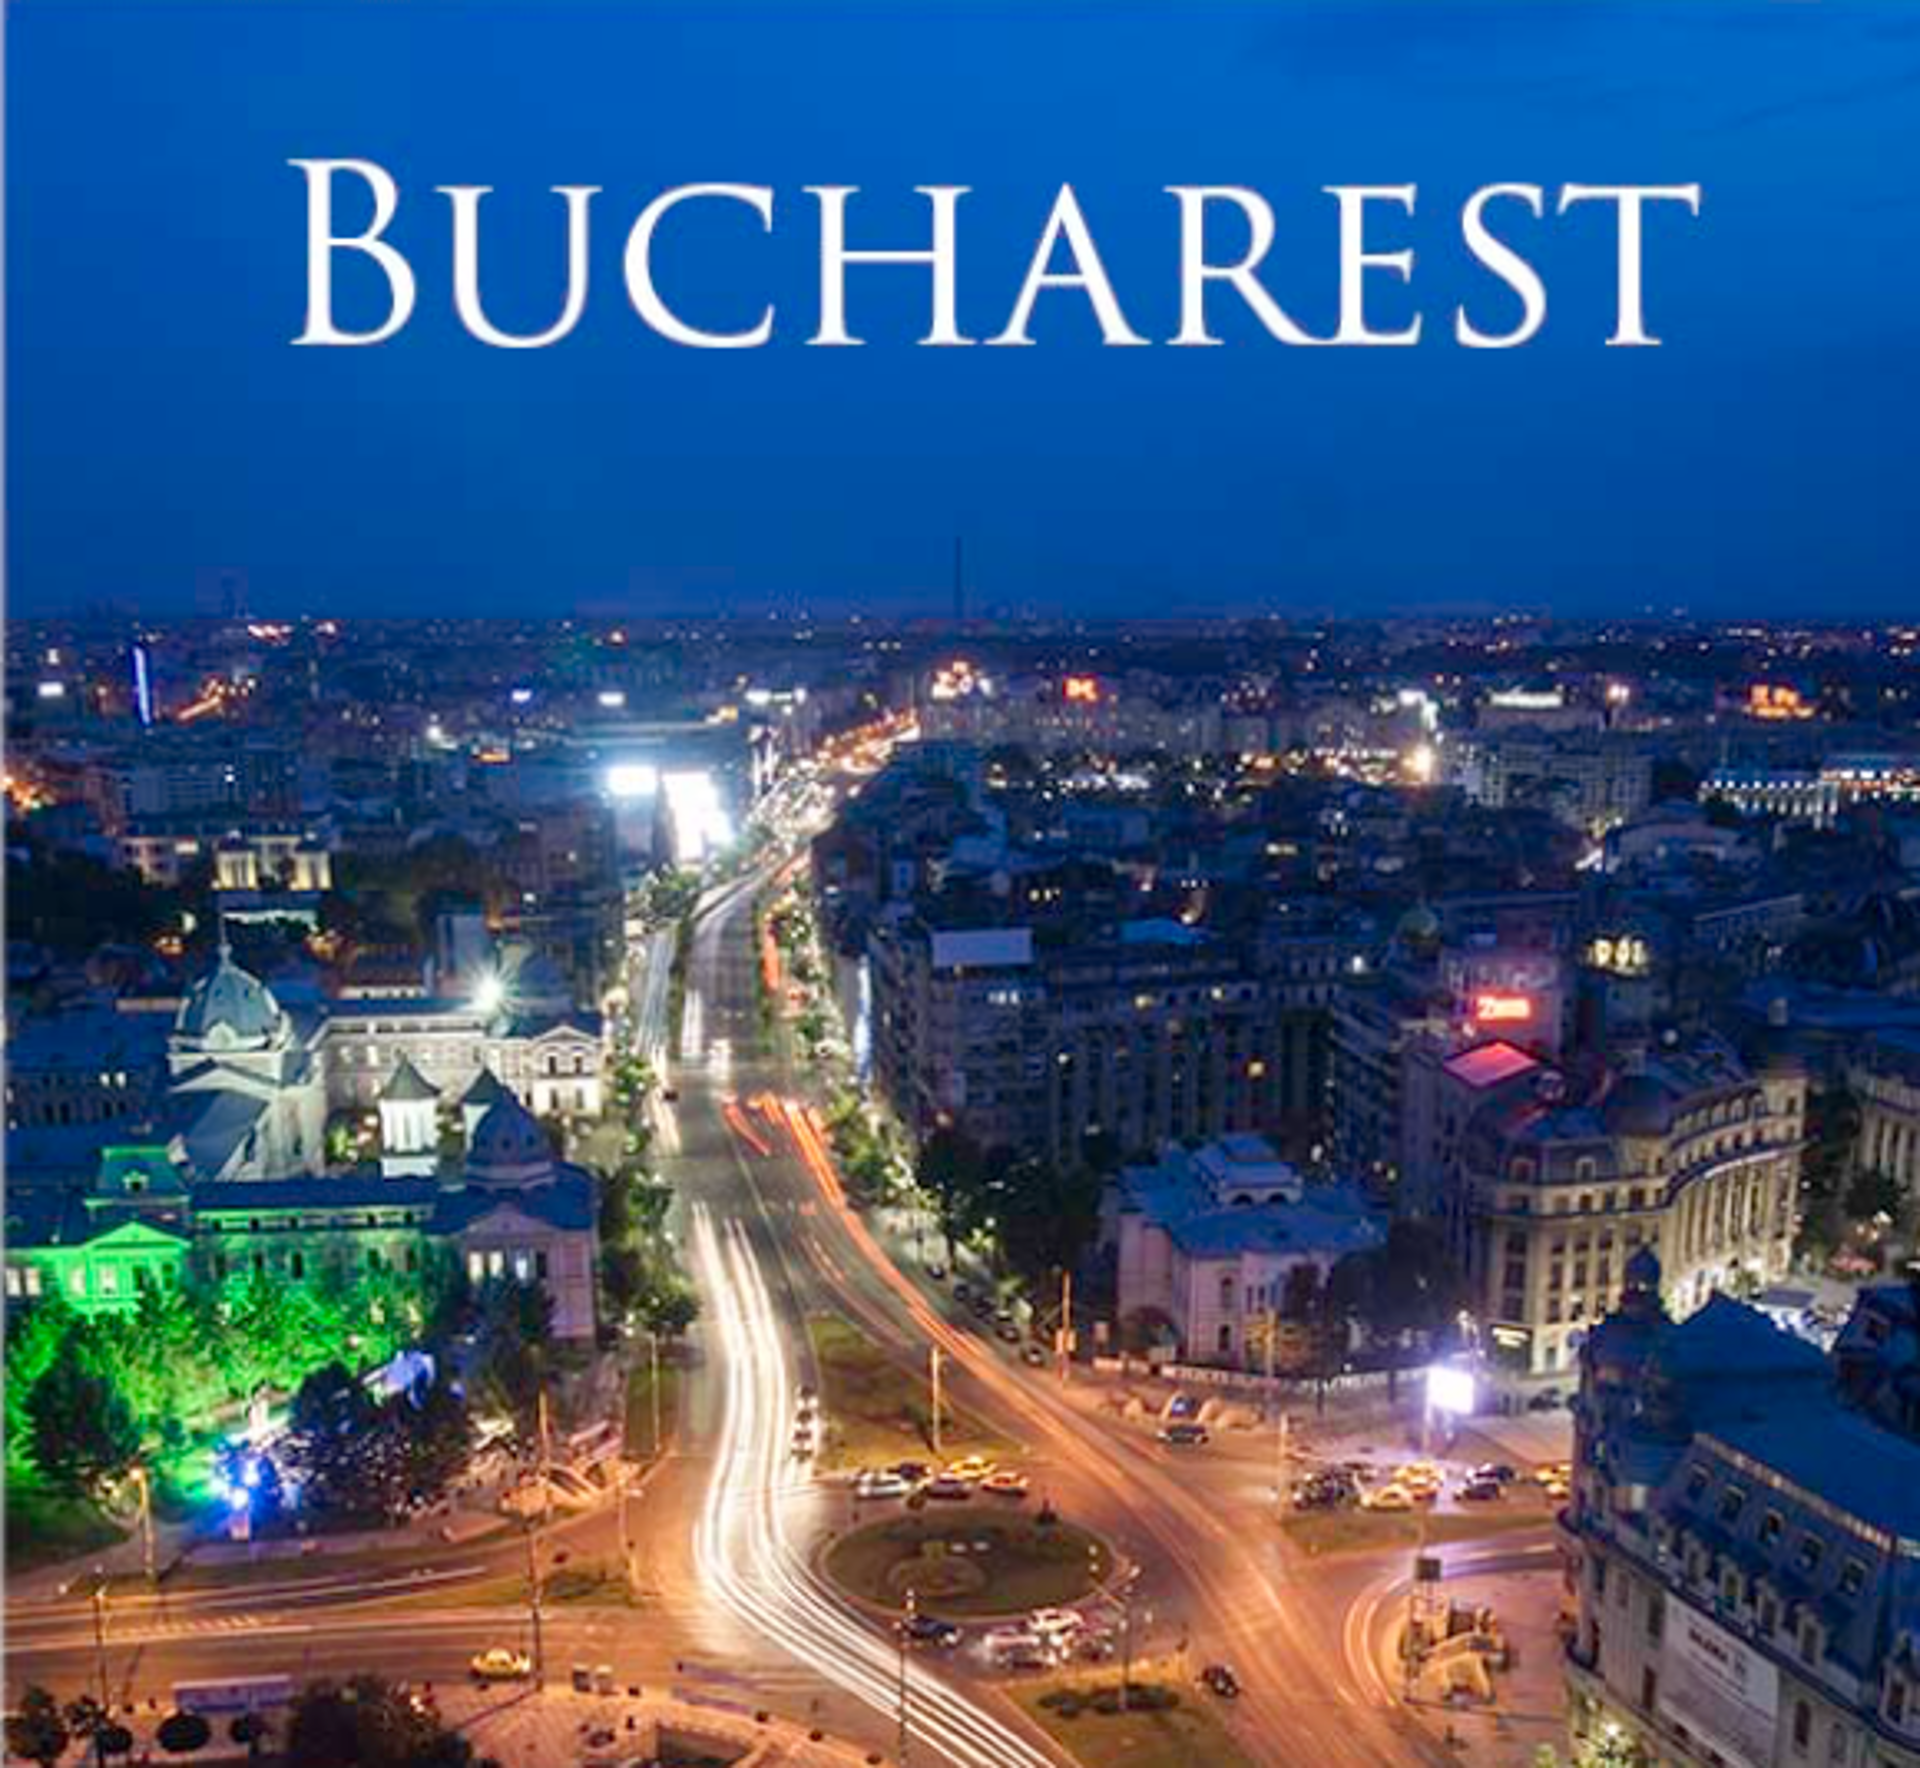 "Bucharest" Commission